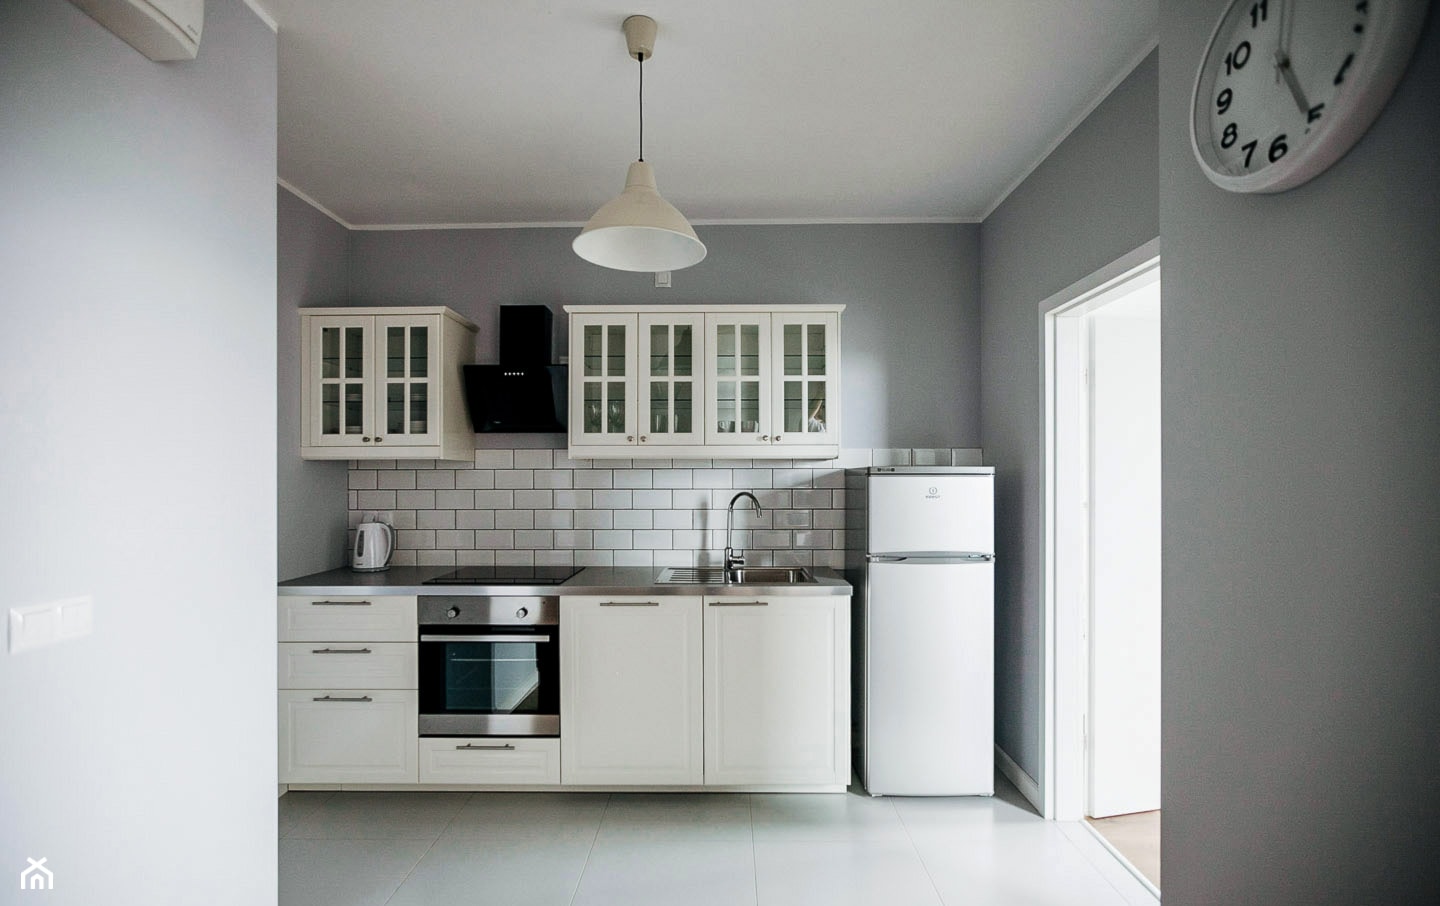 Białe płytki przy meblach i szare ściany w klasycznej kuchni - zdjęcie od Klink.pl Kamień Naturalny - Homebook